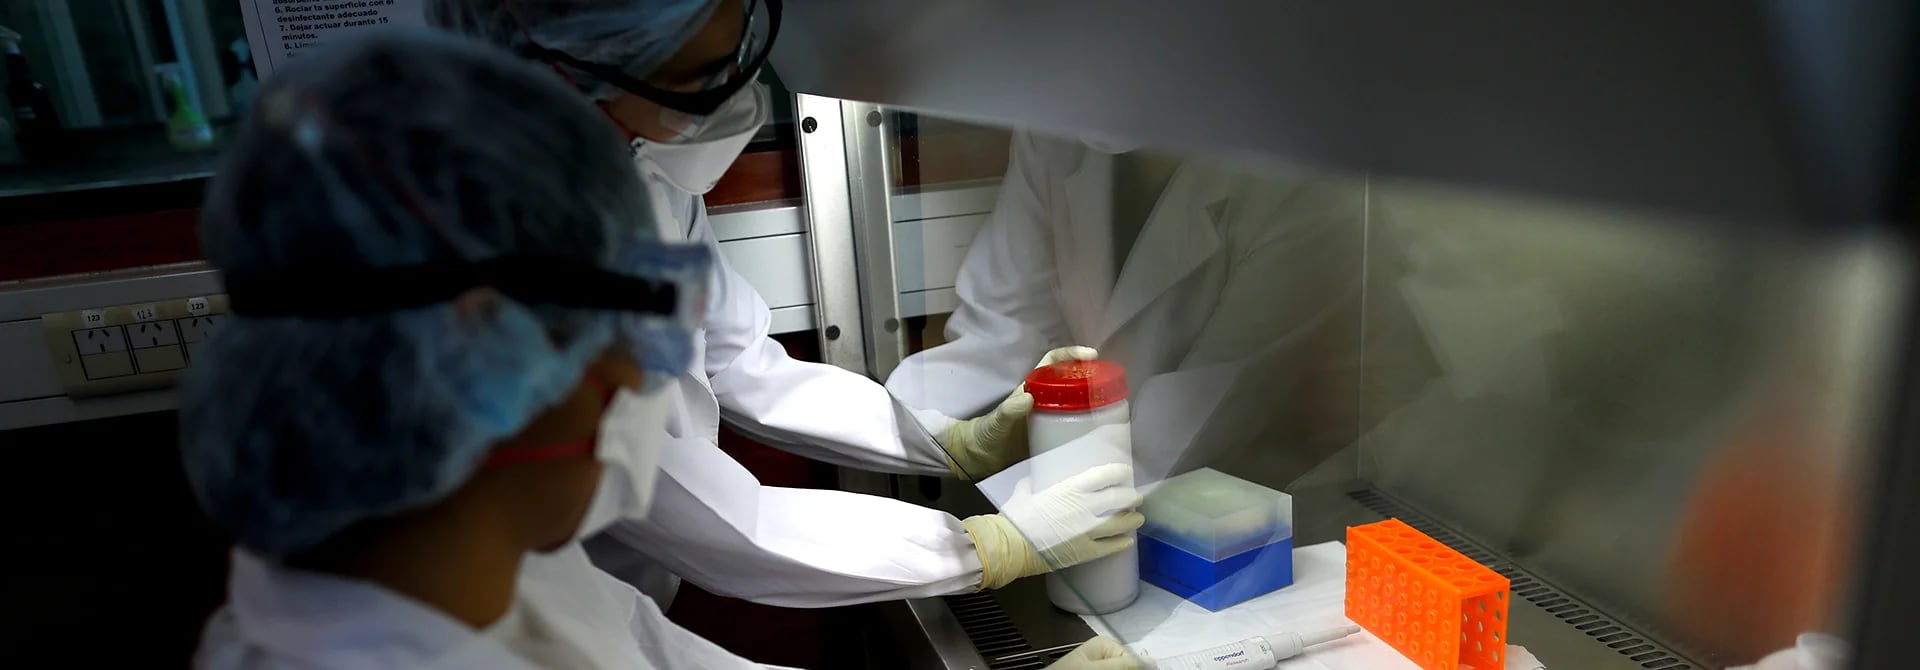 Varios laboratorios en todo el mundo buscan una respuesta efectiva al nuevo coronavirus originado en Wuhan, China - REUTERS/Agustin Marcarian